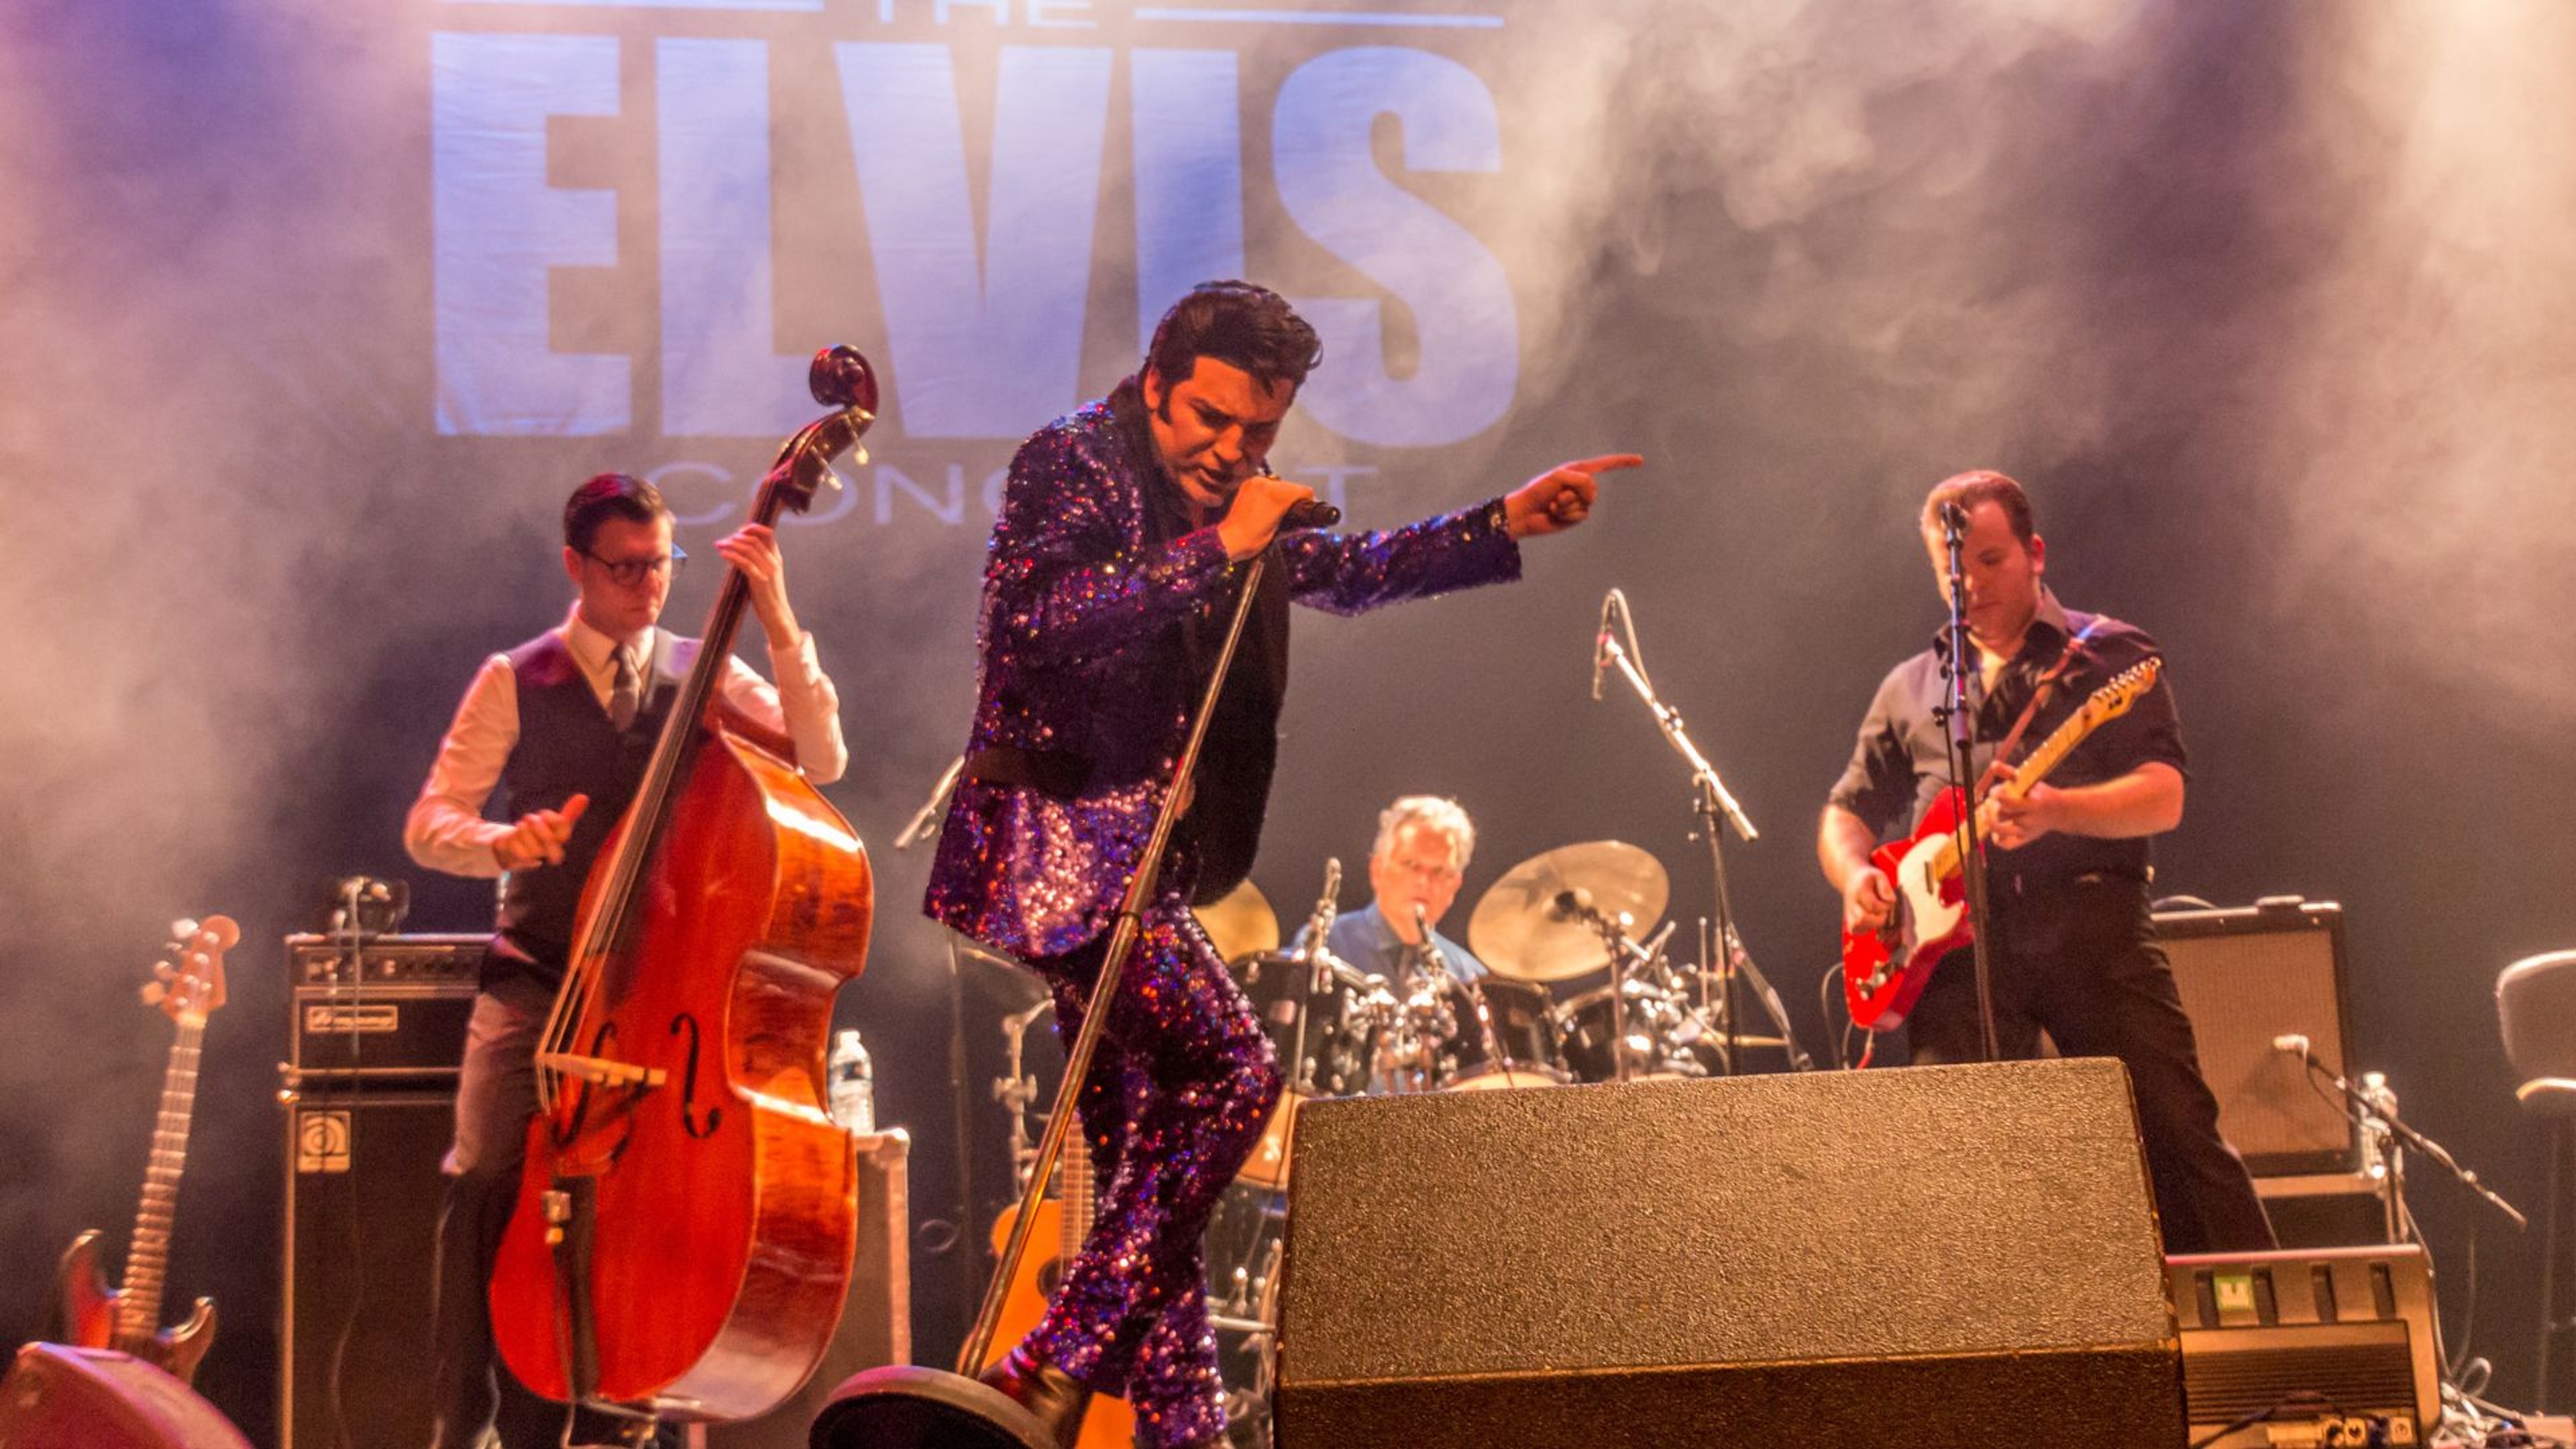 En sångare lik Elvis står på scenen i en lila, glittrig kostym.